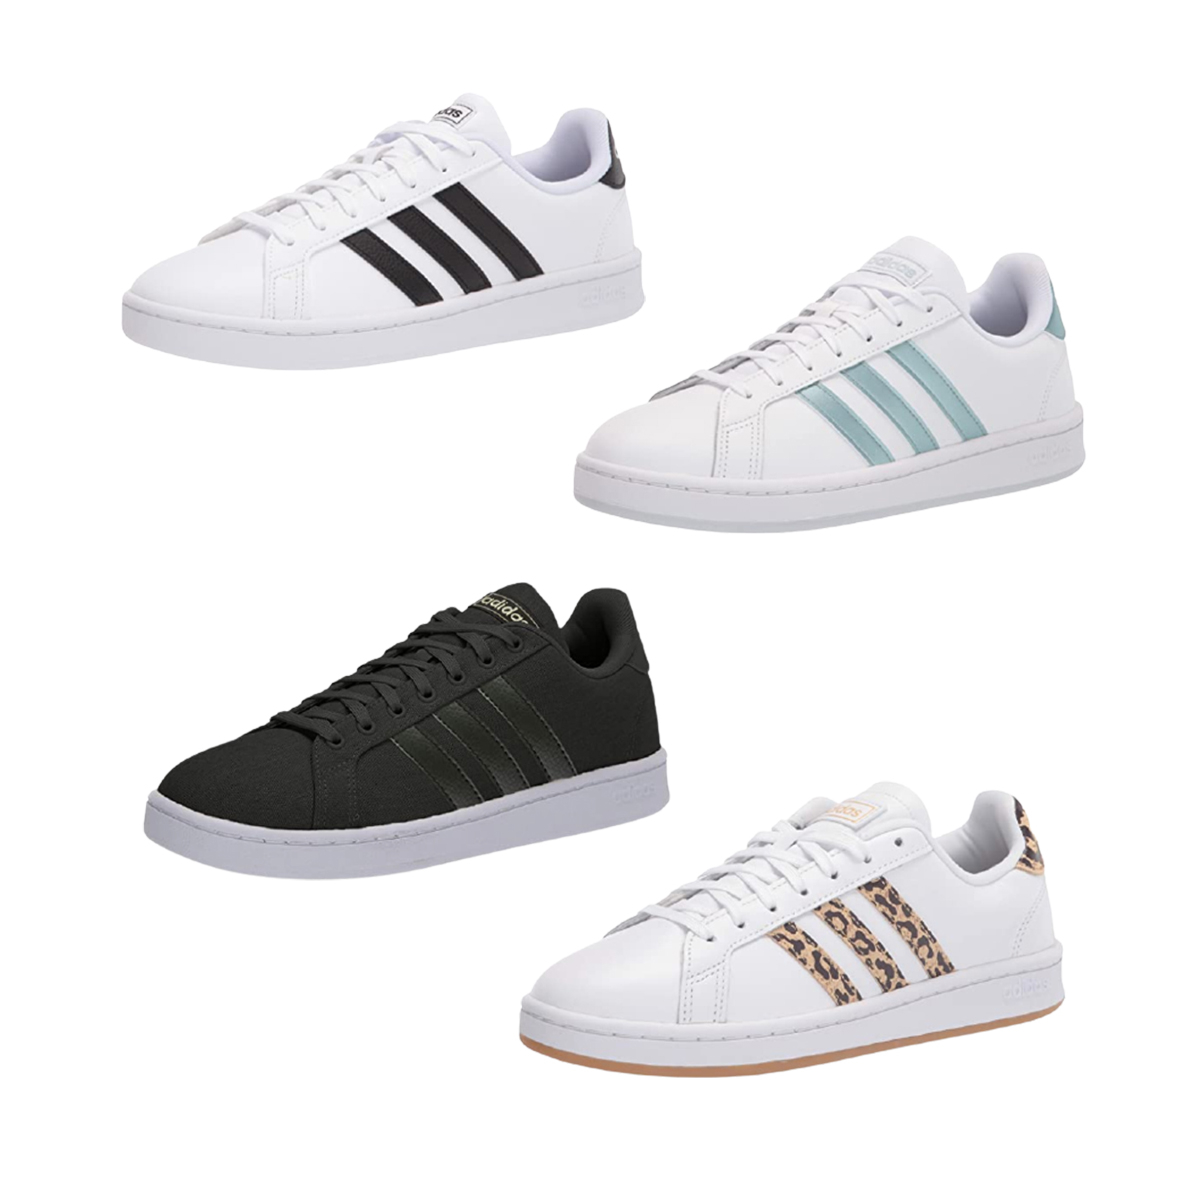 Fuera de enemigo Ortografía Bestselling Adidas Sneakers for $37? Shop This Amazon Sale Now! - E! Online  - CA